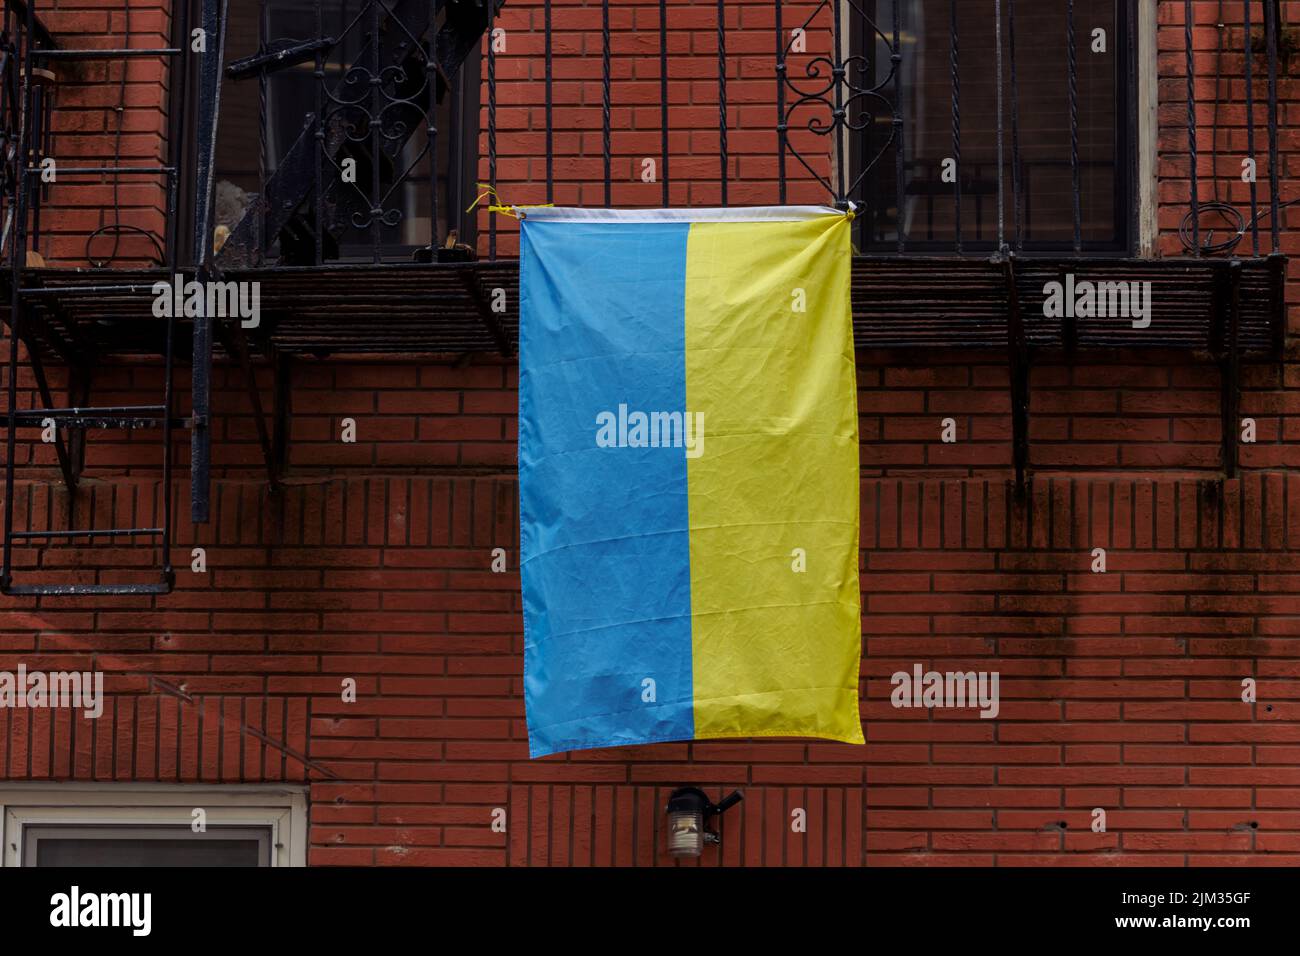 Una bandiera Ucraina appesa a un incendio scappata dal lato di un edificio in mattoni rossi nella città di New york, mostrando solidarietà con l'Ucraina Foto Stock